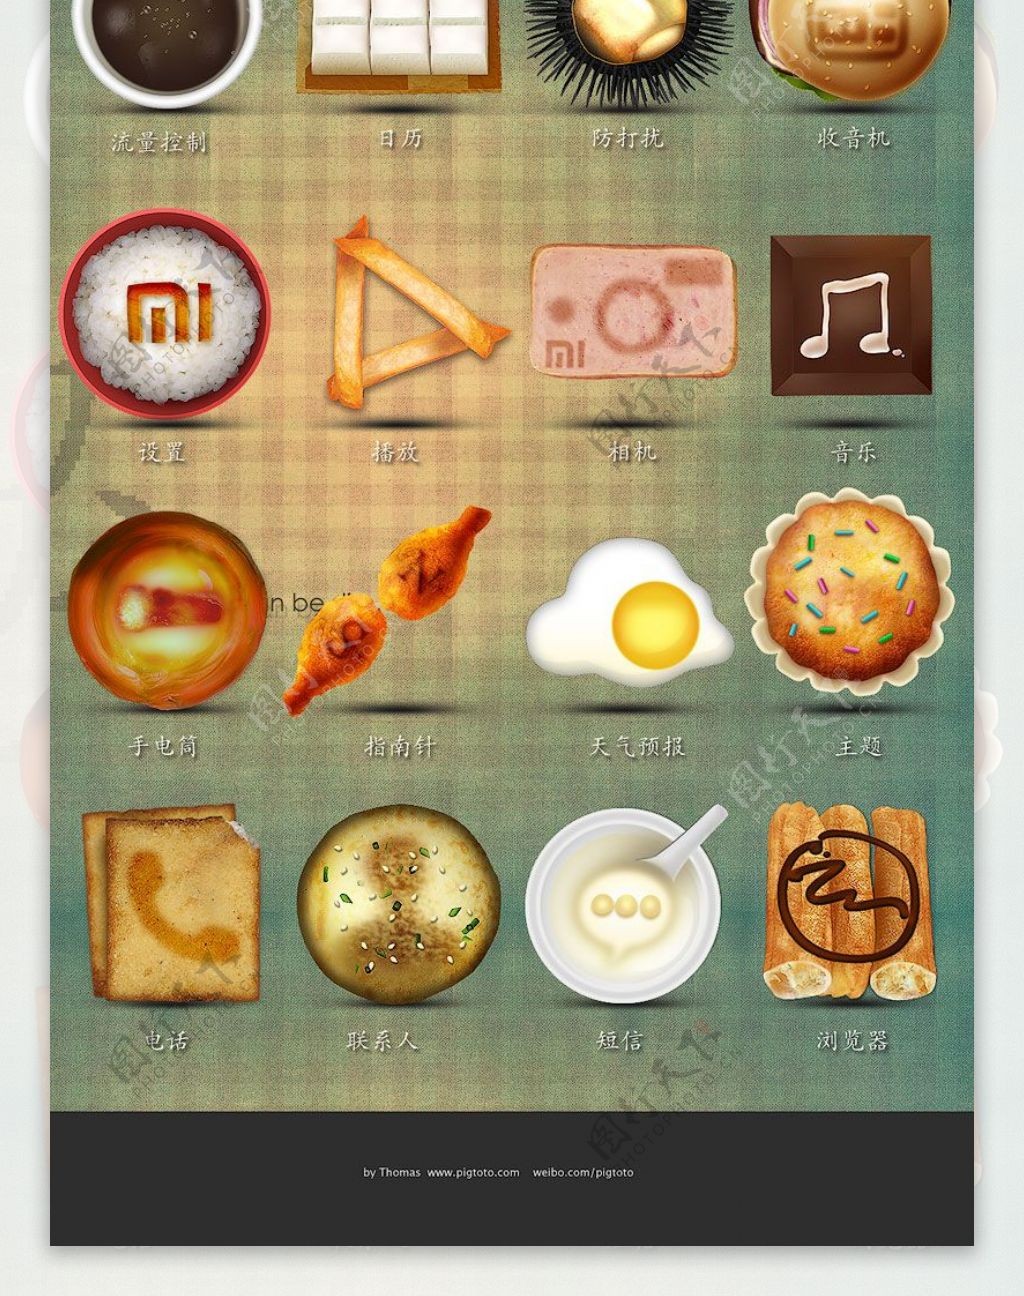 选的手机功能性图标设计减肥成品右上角标有卡路里